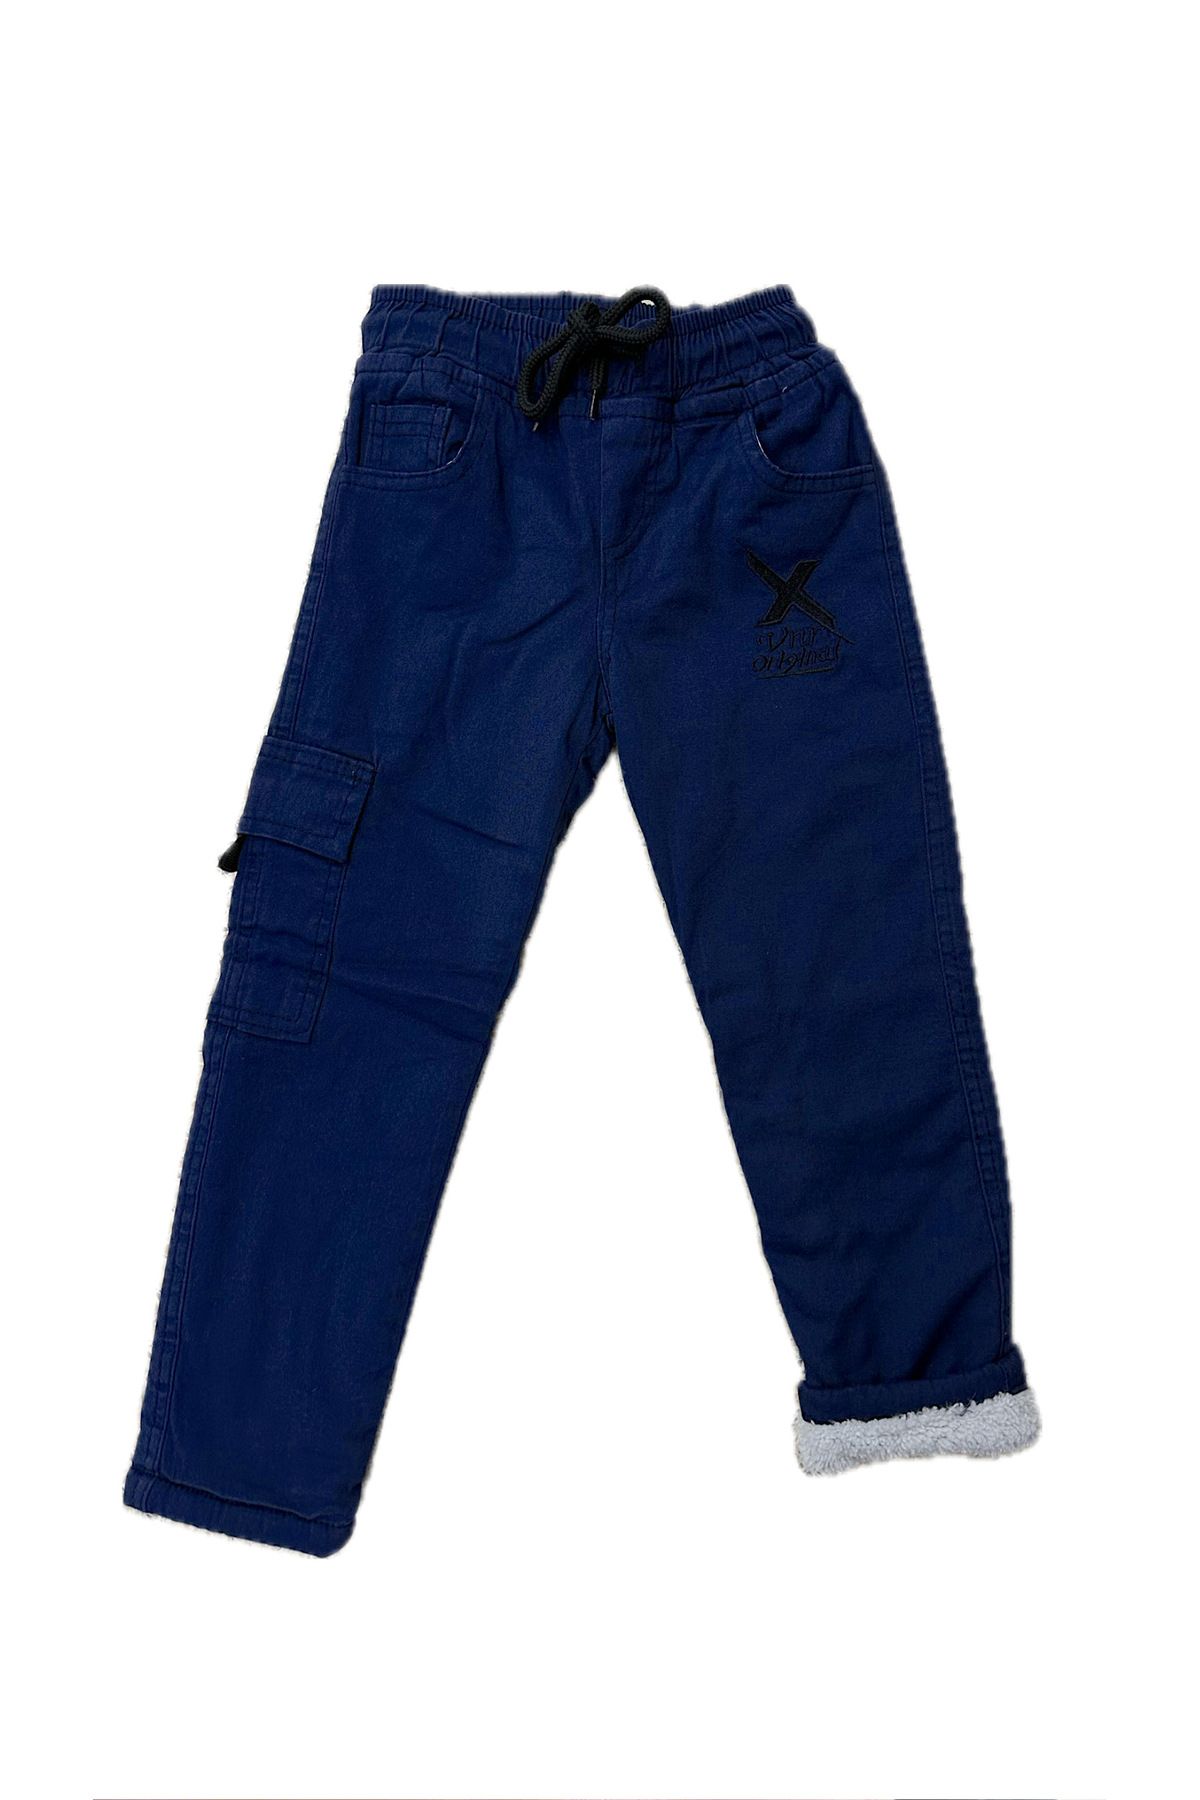 NİNYS BABY Beli Lastikli Kışlık Polar Welsoft Nakışlı Çocuk Pantolonu & Kargo Cepli Erkek/Çocuk